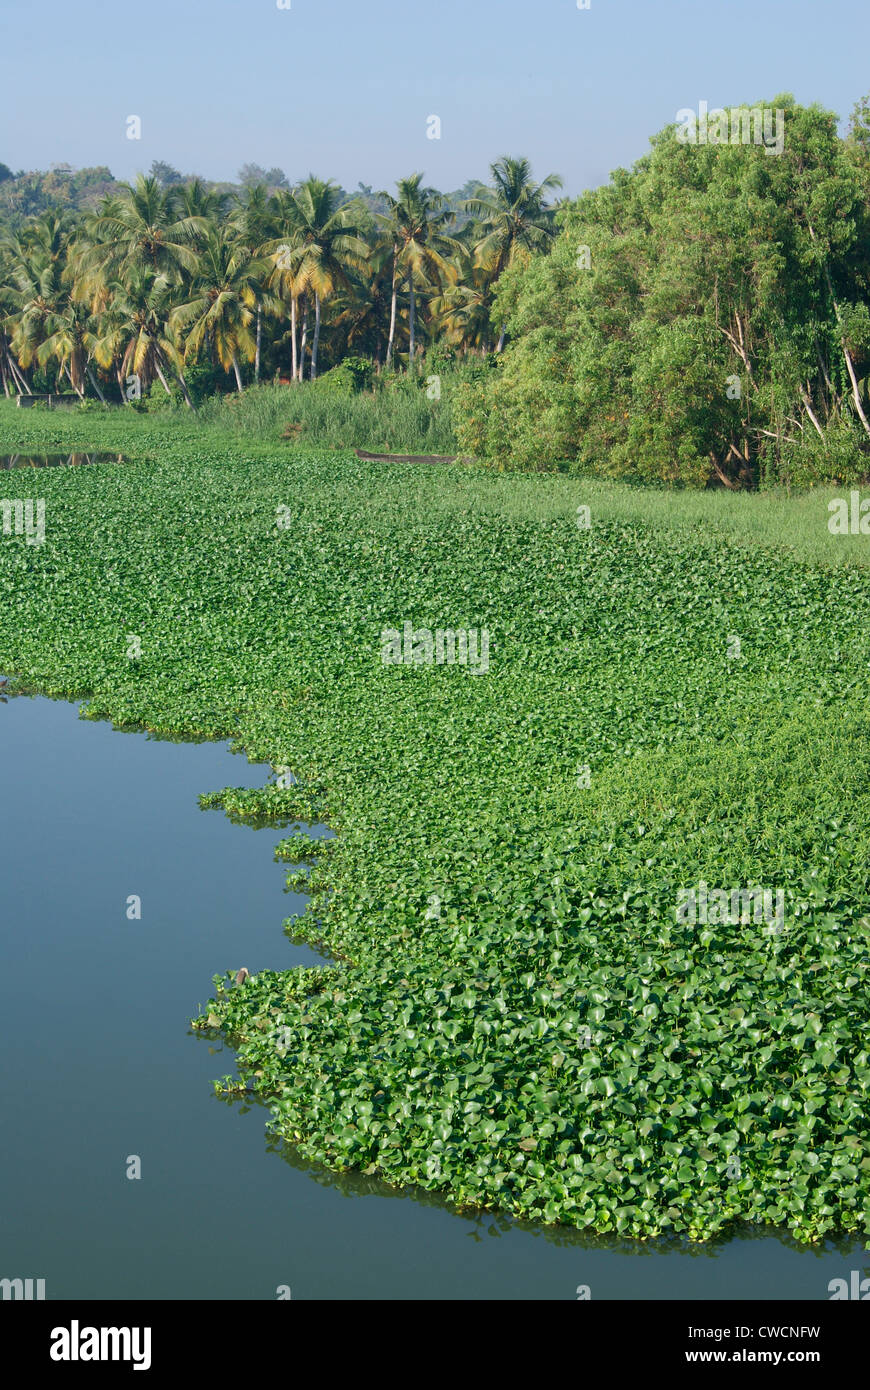 Veli Lake on the banks of Akulam Lakes Surrounded by Eichhornia crassipes Algae.Kerala Backwaters landscape scenery Kerala India Stock Photo